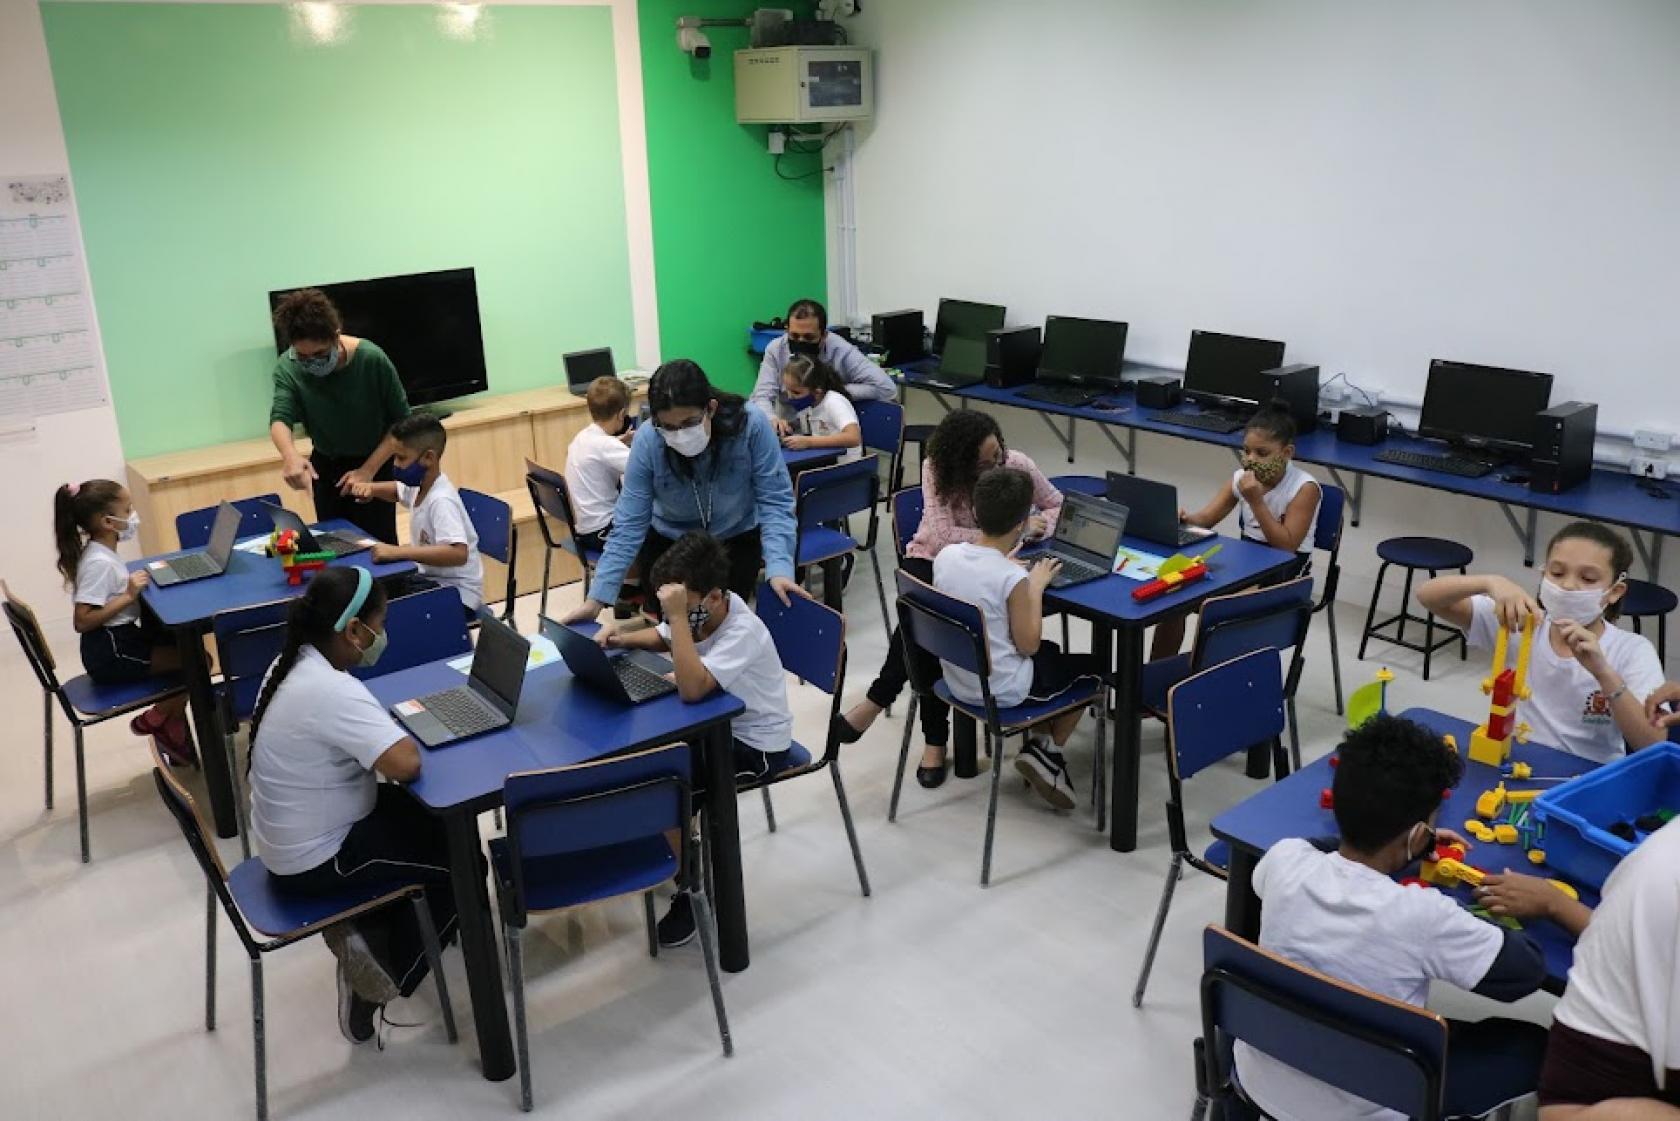 sala com diversas mesas. Alunos sentados mexendo nos computadores. Alguns professores estão ao lado dos alunos. À direita, uma menina monta uma estrutura com peças colorida, como um jogos de peças de encaixe. #paratodosverem